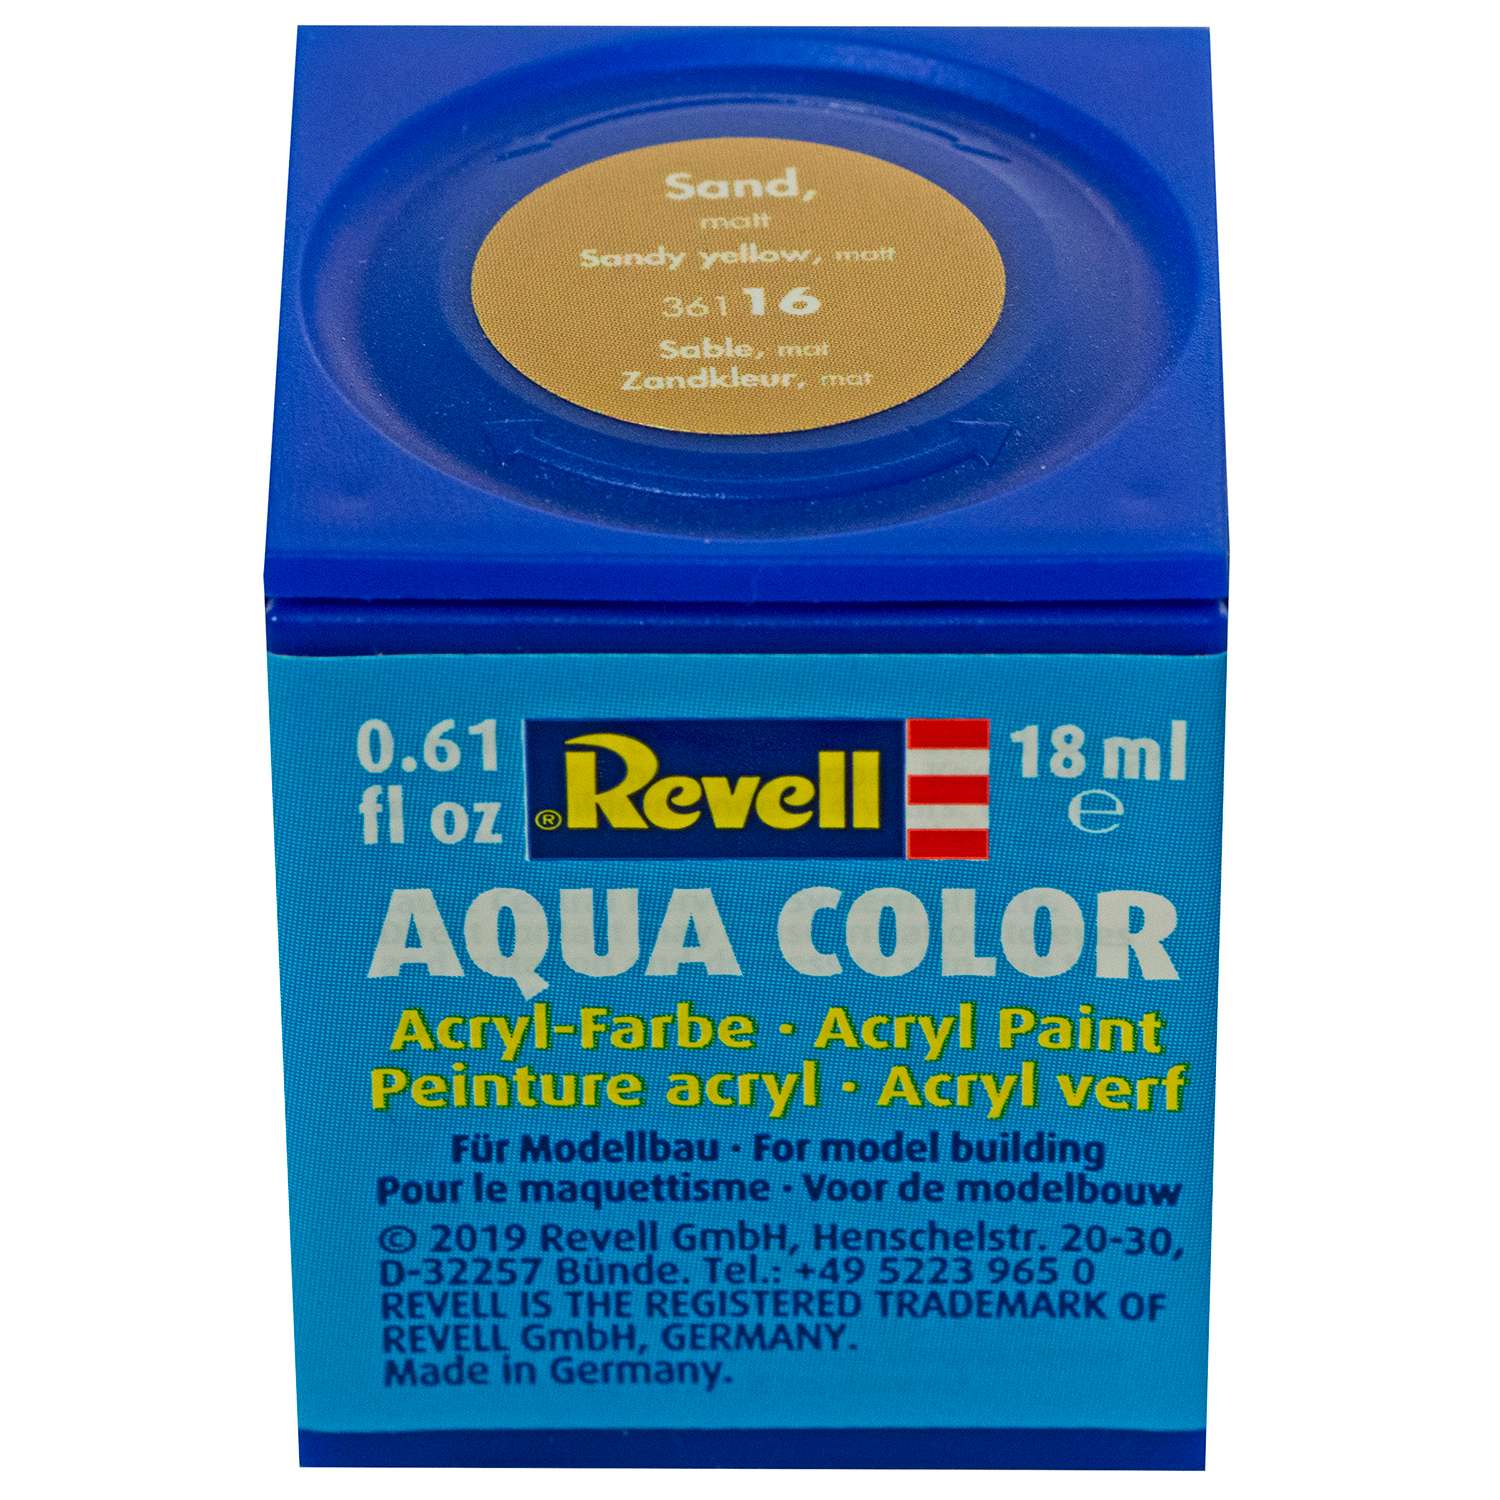 Аква-краска Revell песочного цвета матовая 14 мл 36116 - фото 2